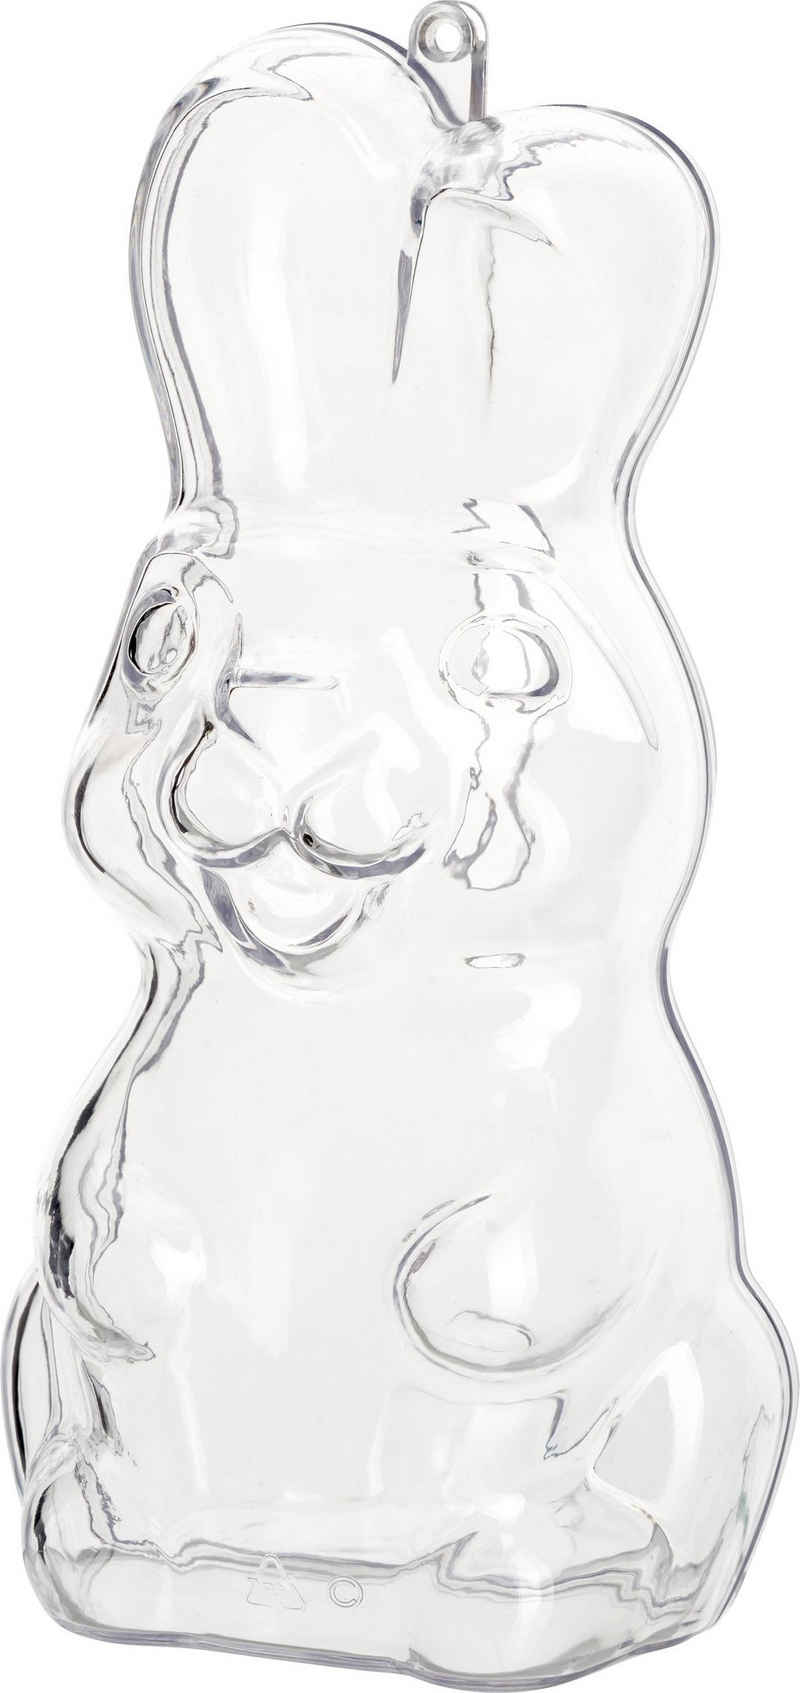 Hängedekoration Acryl-Form Stehender Hase, 13 cm hoch